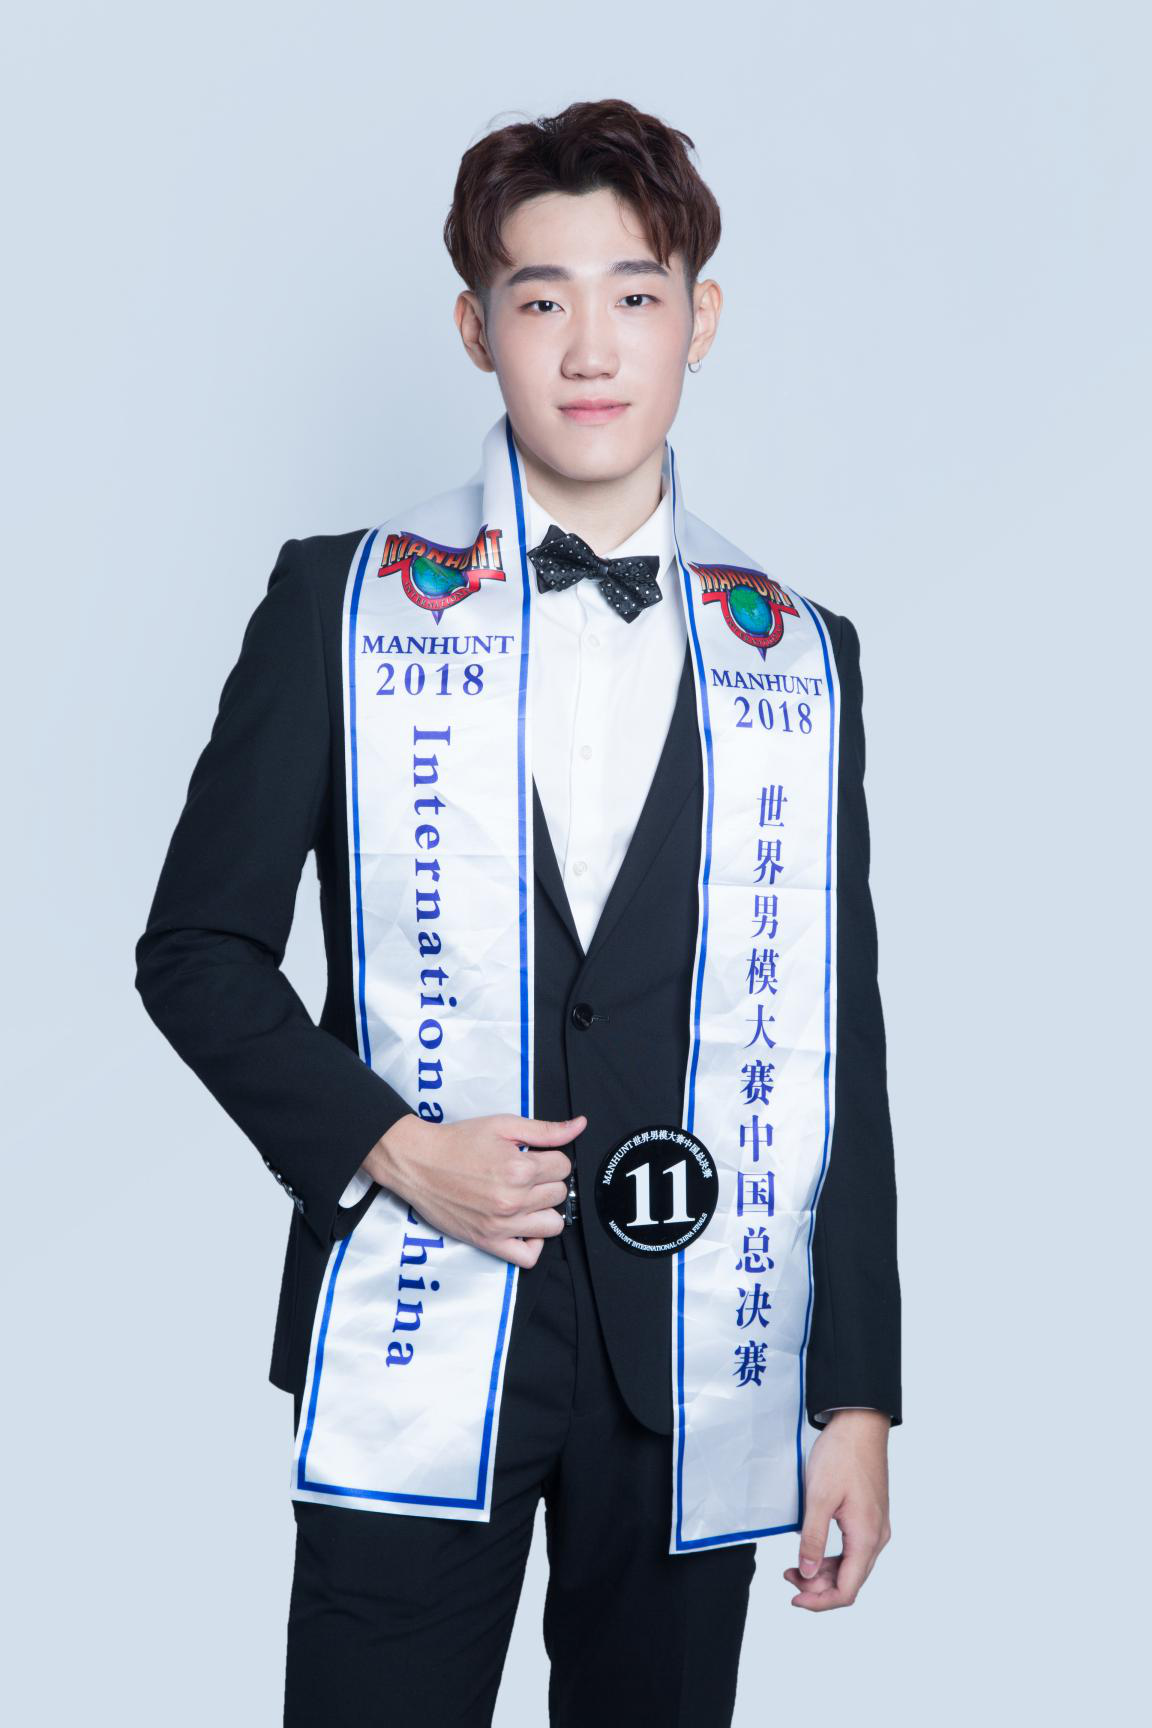 人气少年李成泽荣获manhunt世界男模大赛香港冠军